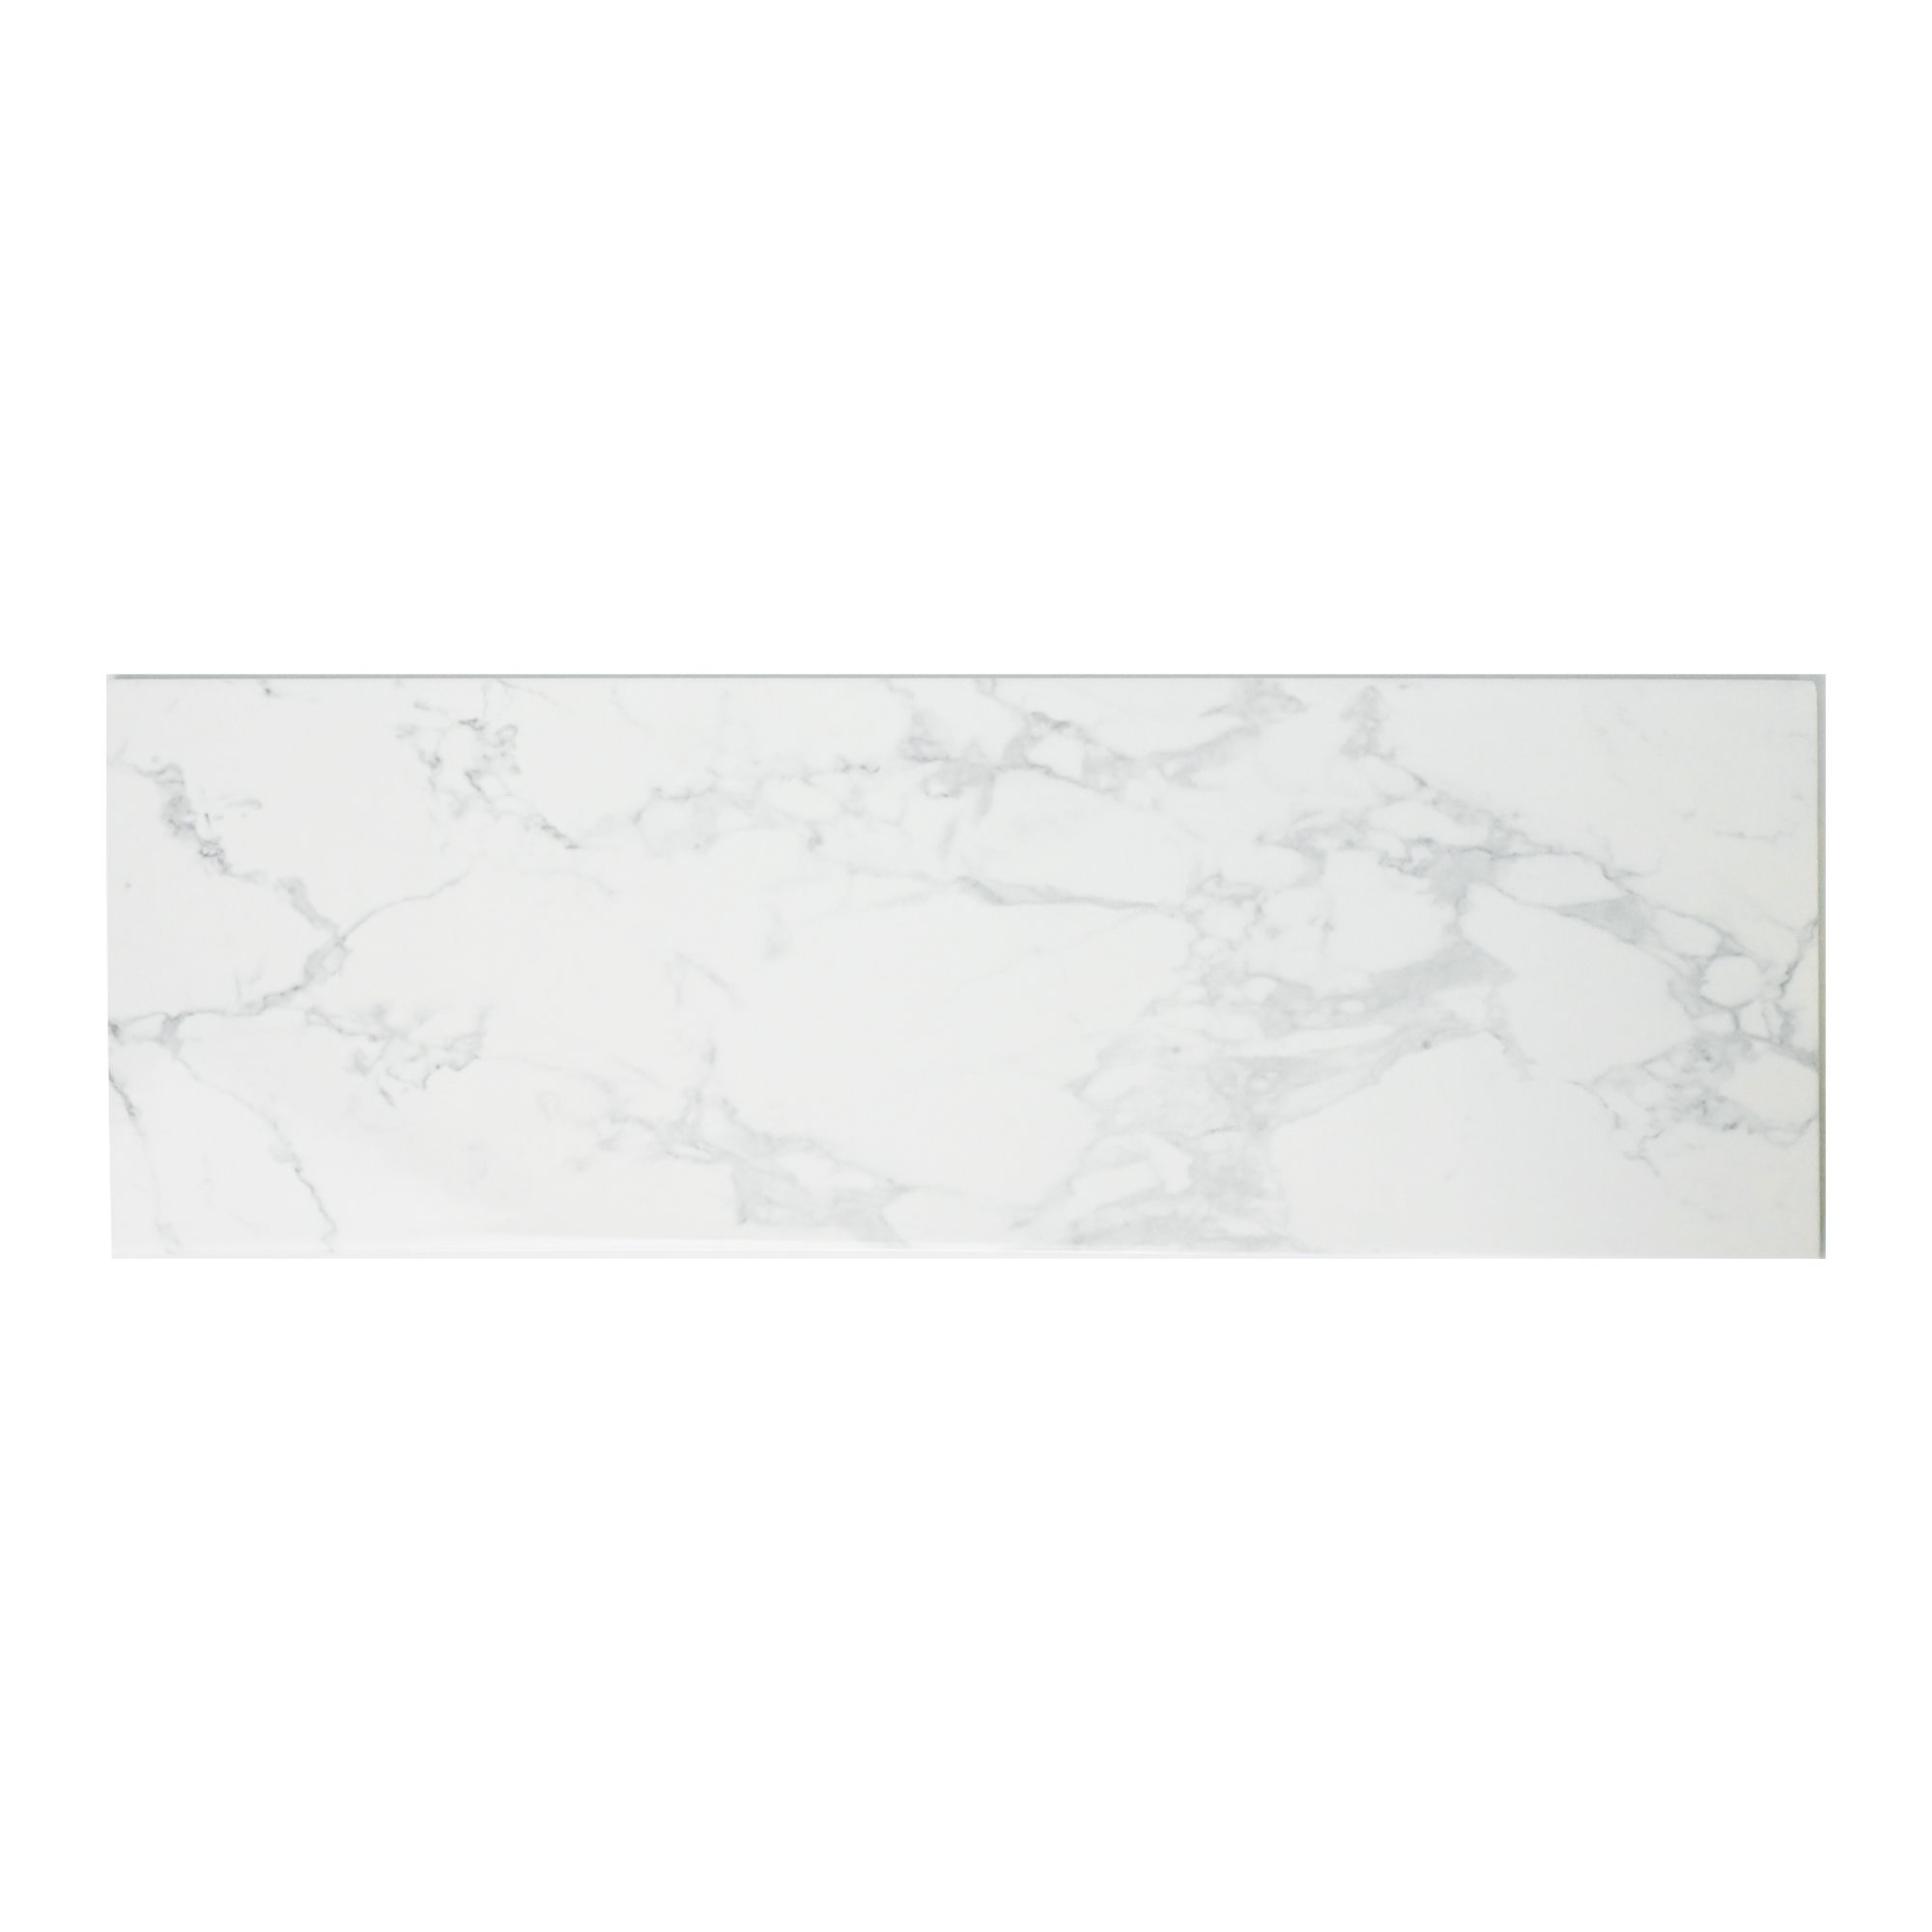 Johnson Tiles Lusso White Gloss Marble effect Ceramic Wall & floor Tile, Pack of 5, (L)600mm (W)200mm